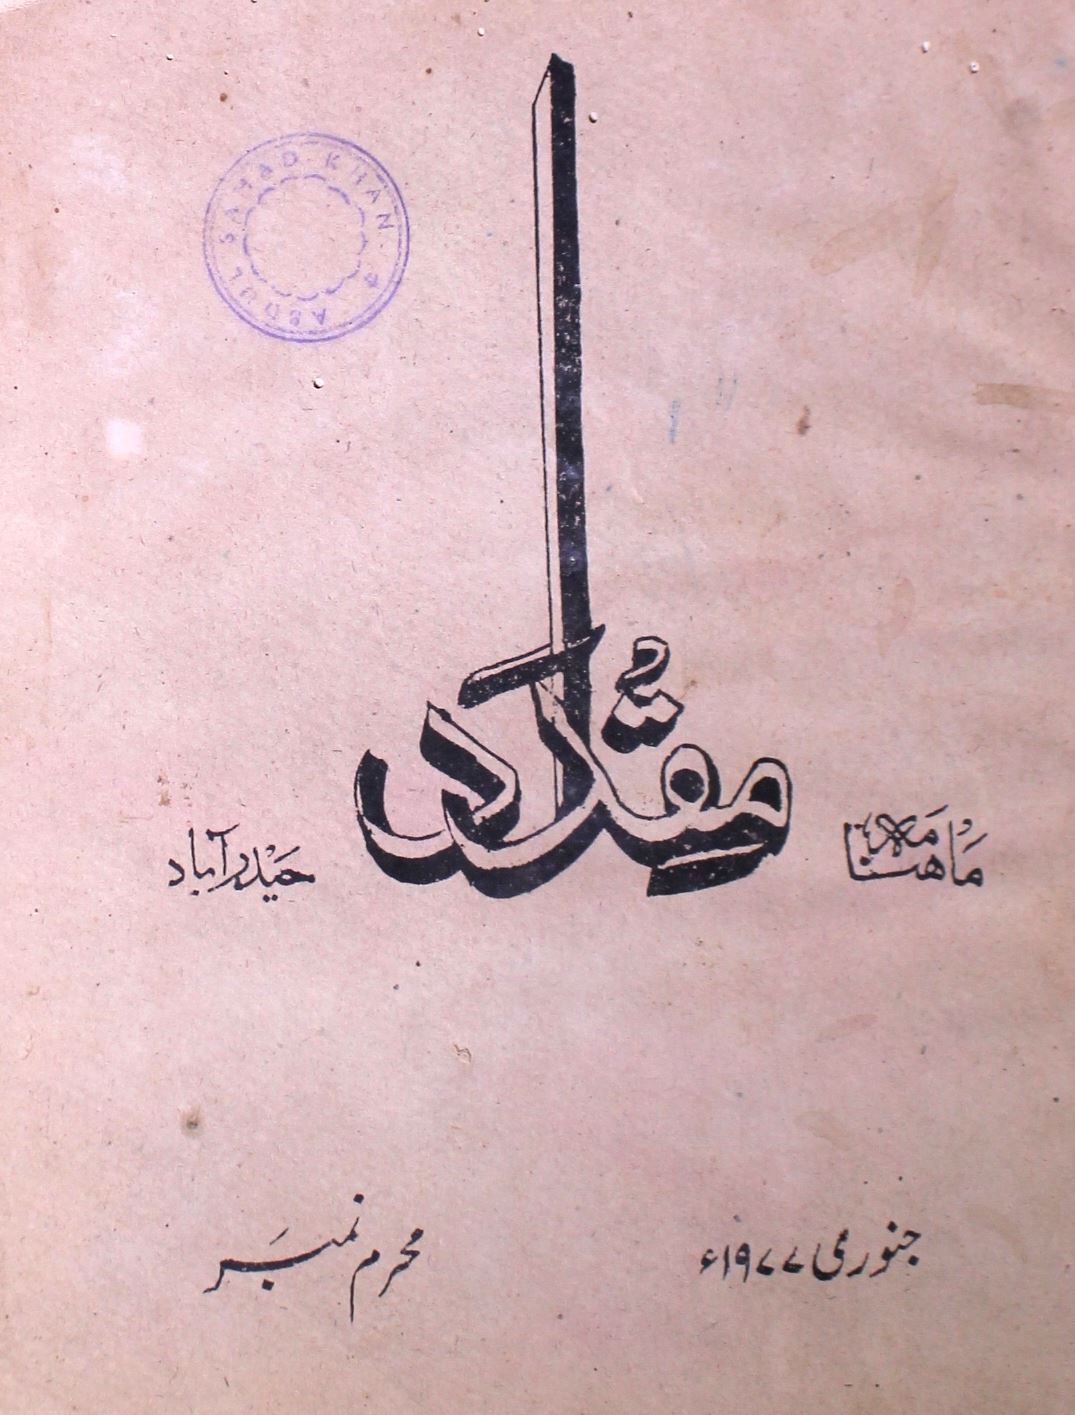 Mukadar Jild.1 No.2 Jan 1977-SVK